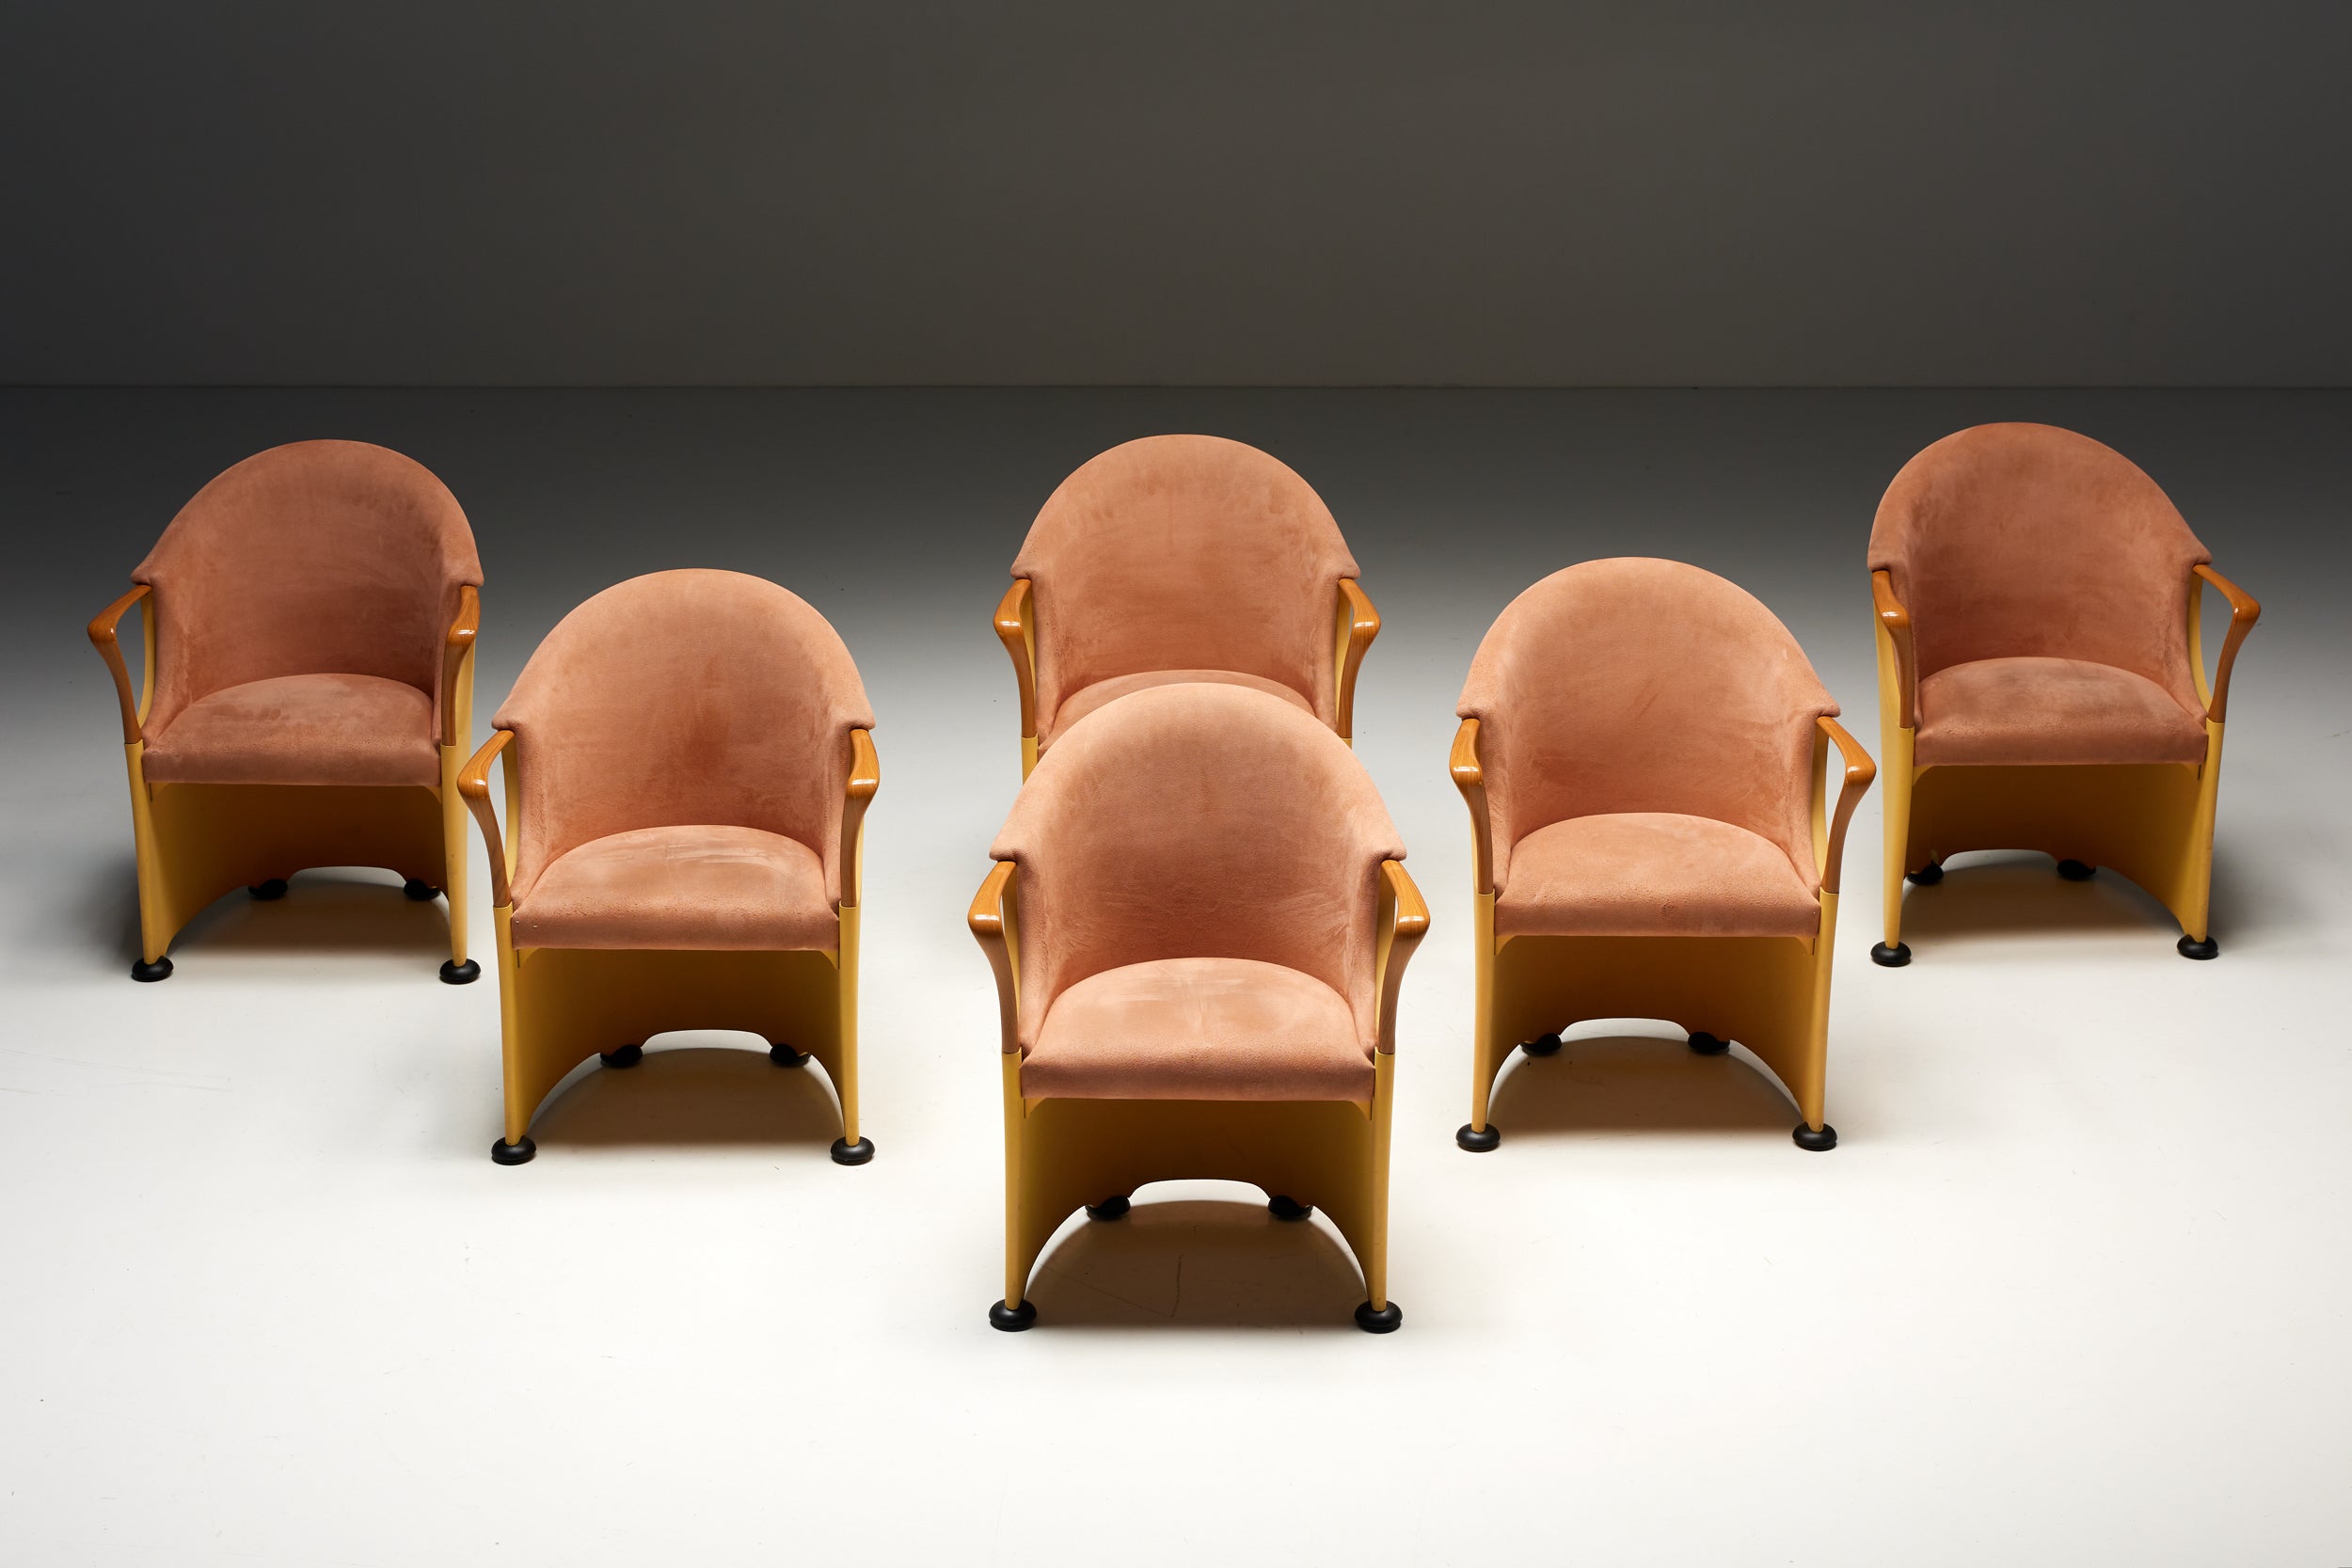 Chaises de salle à manger Tronetto, un superbe ensemble de 6 chaises conçues par Luigi Origlia et produites par la société de meubles italienne Origlia Italy vers 1990. Ces chaises présentent une combinaison unique de caractéristiques qui les font